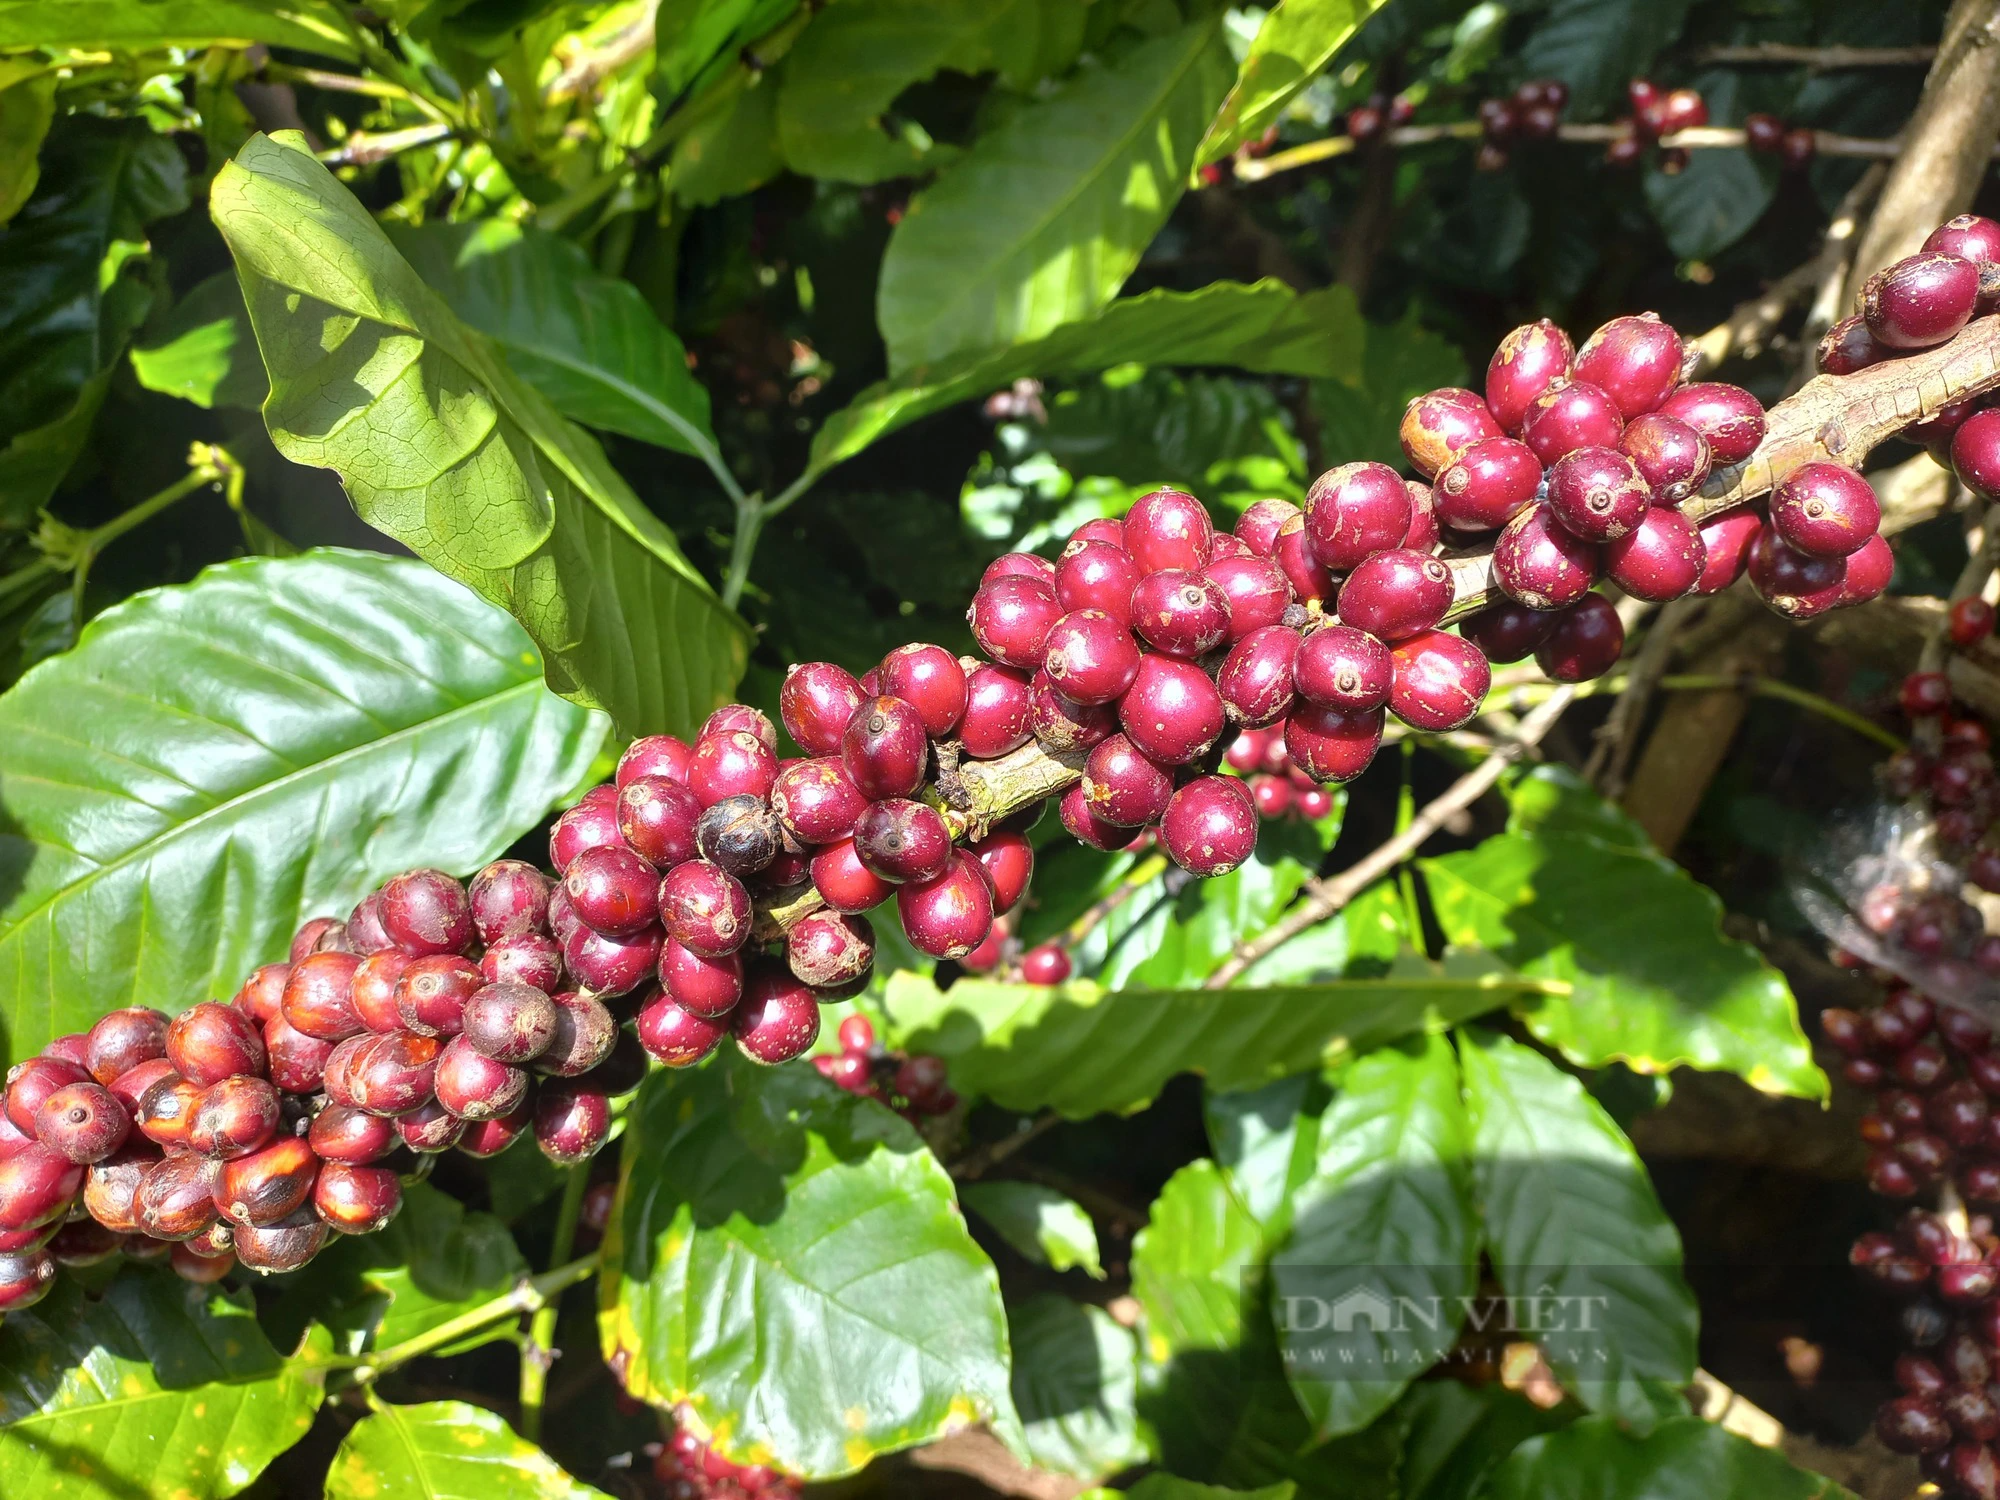 Trồng cà phê theo hướng hữu cơ, hái quả chín để nâng cao chất lượng sản phẩm - Ảnh 2.